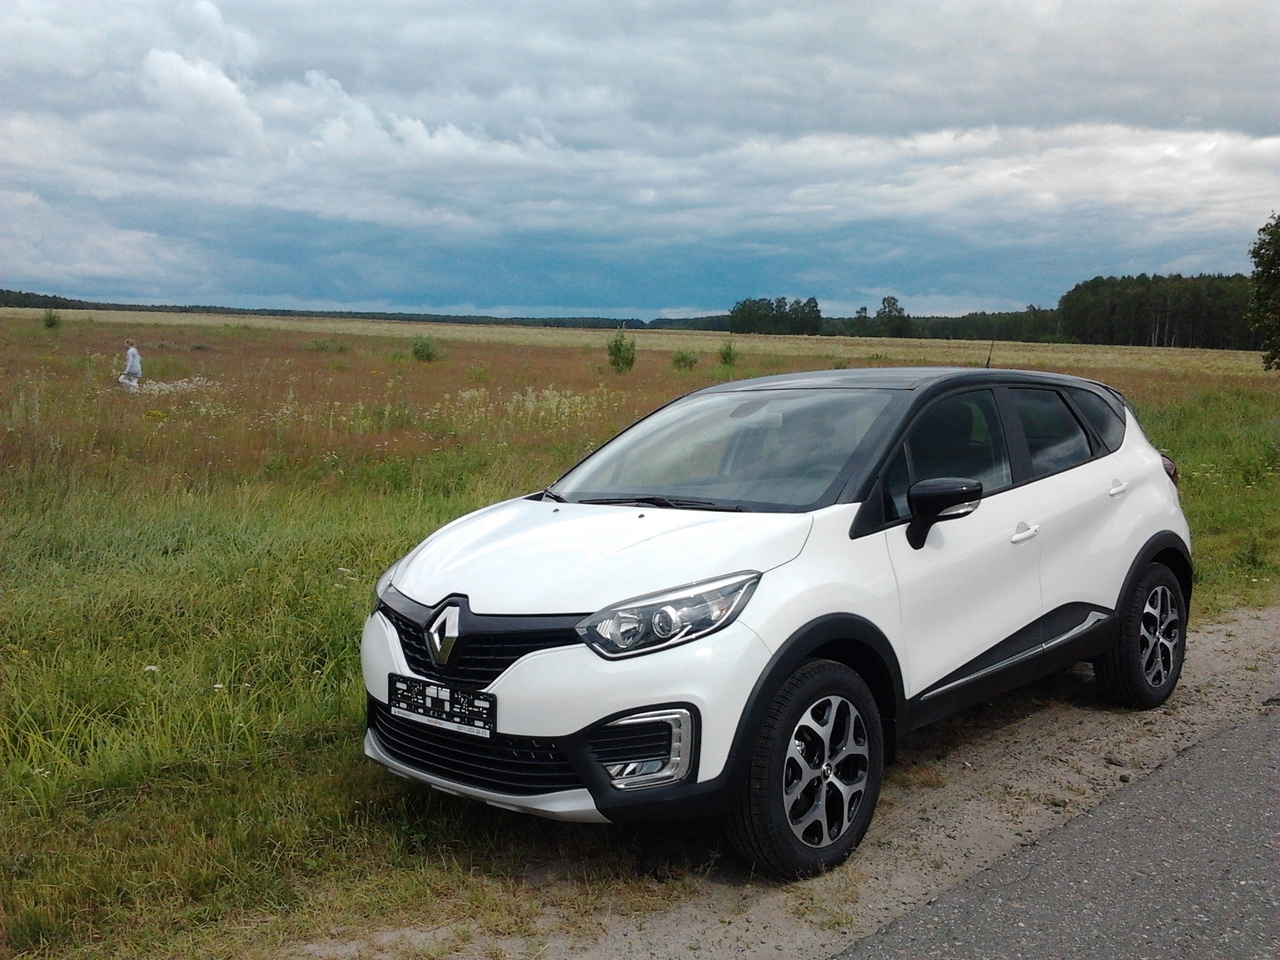 Renault Captur poluchil rashod topliva vsego v 1.5 litra1